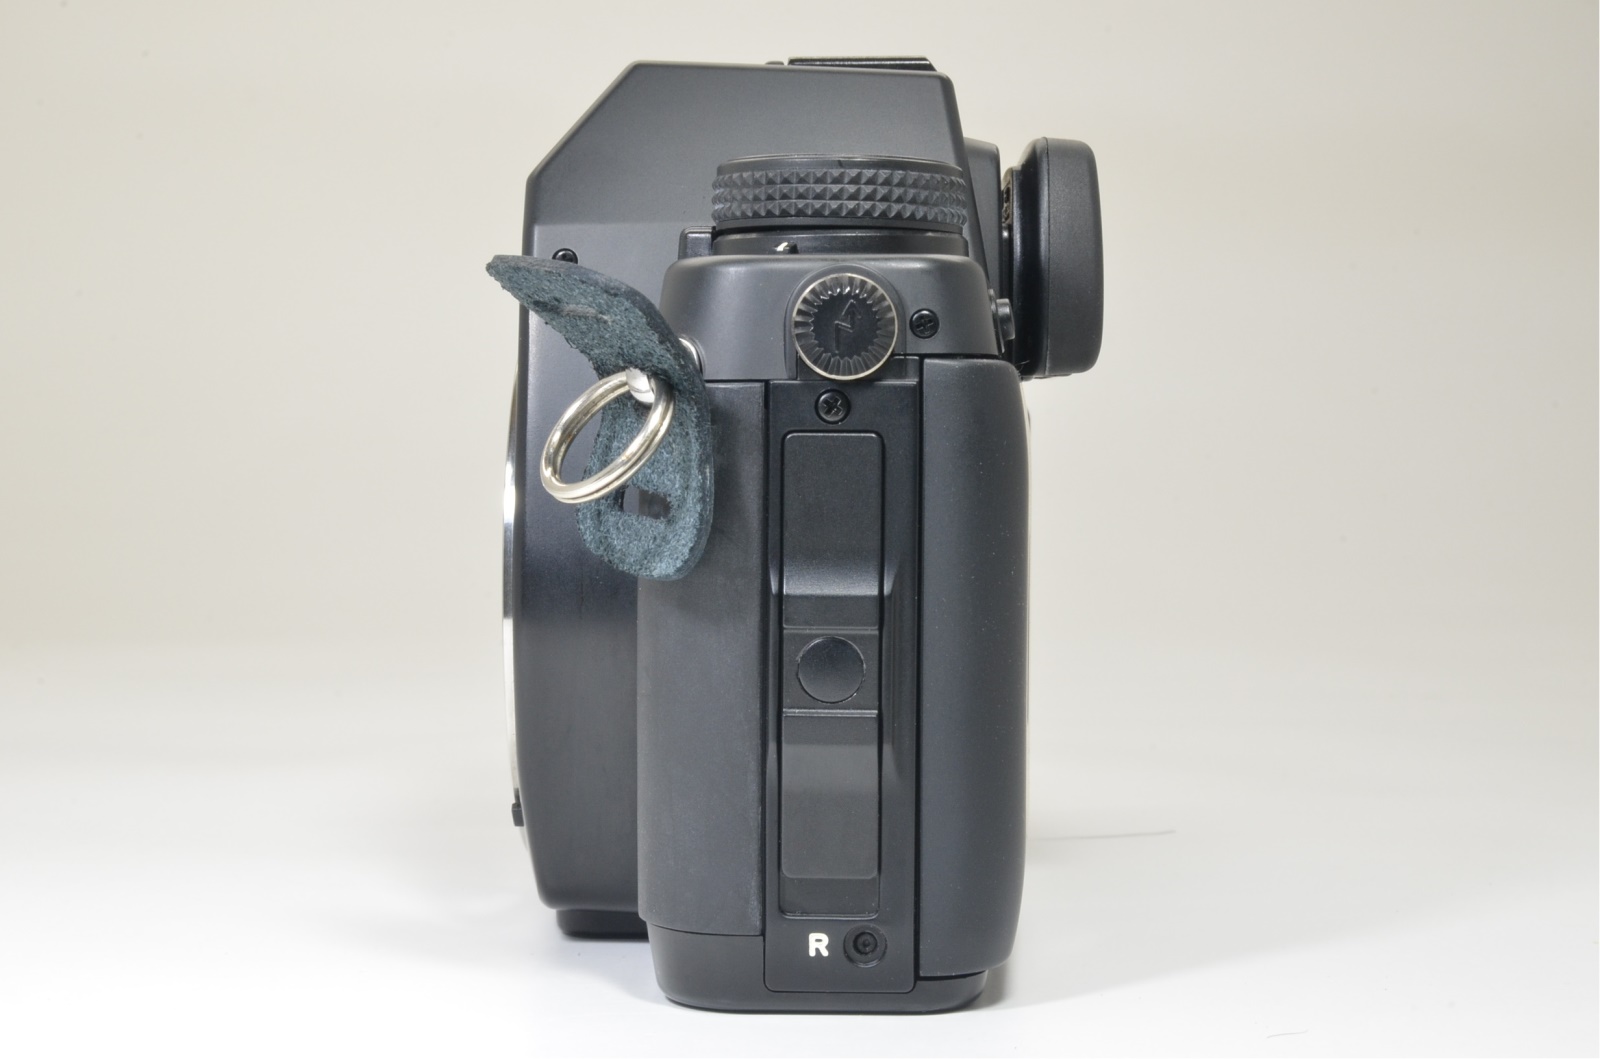 contax aria data back, tessar 45mm f2.8, vario-sonnar 28-70mm mmj film tested